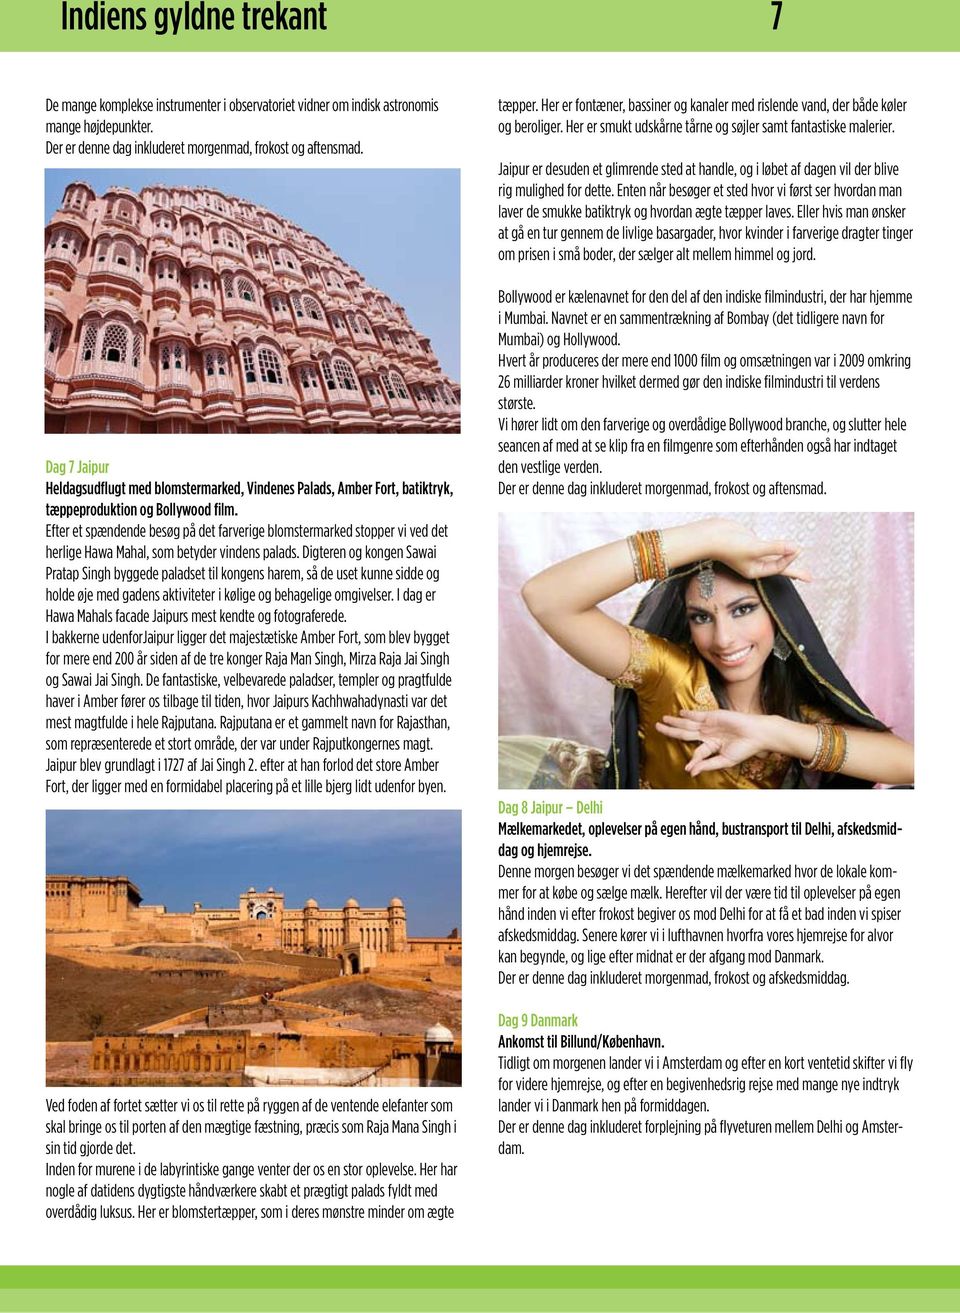 Jaipur er desuden et glimrende sted at handle, og i løbet af dagen vil der blive rig mulighed for dette.